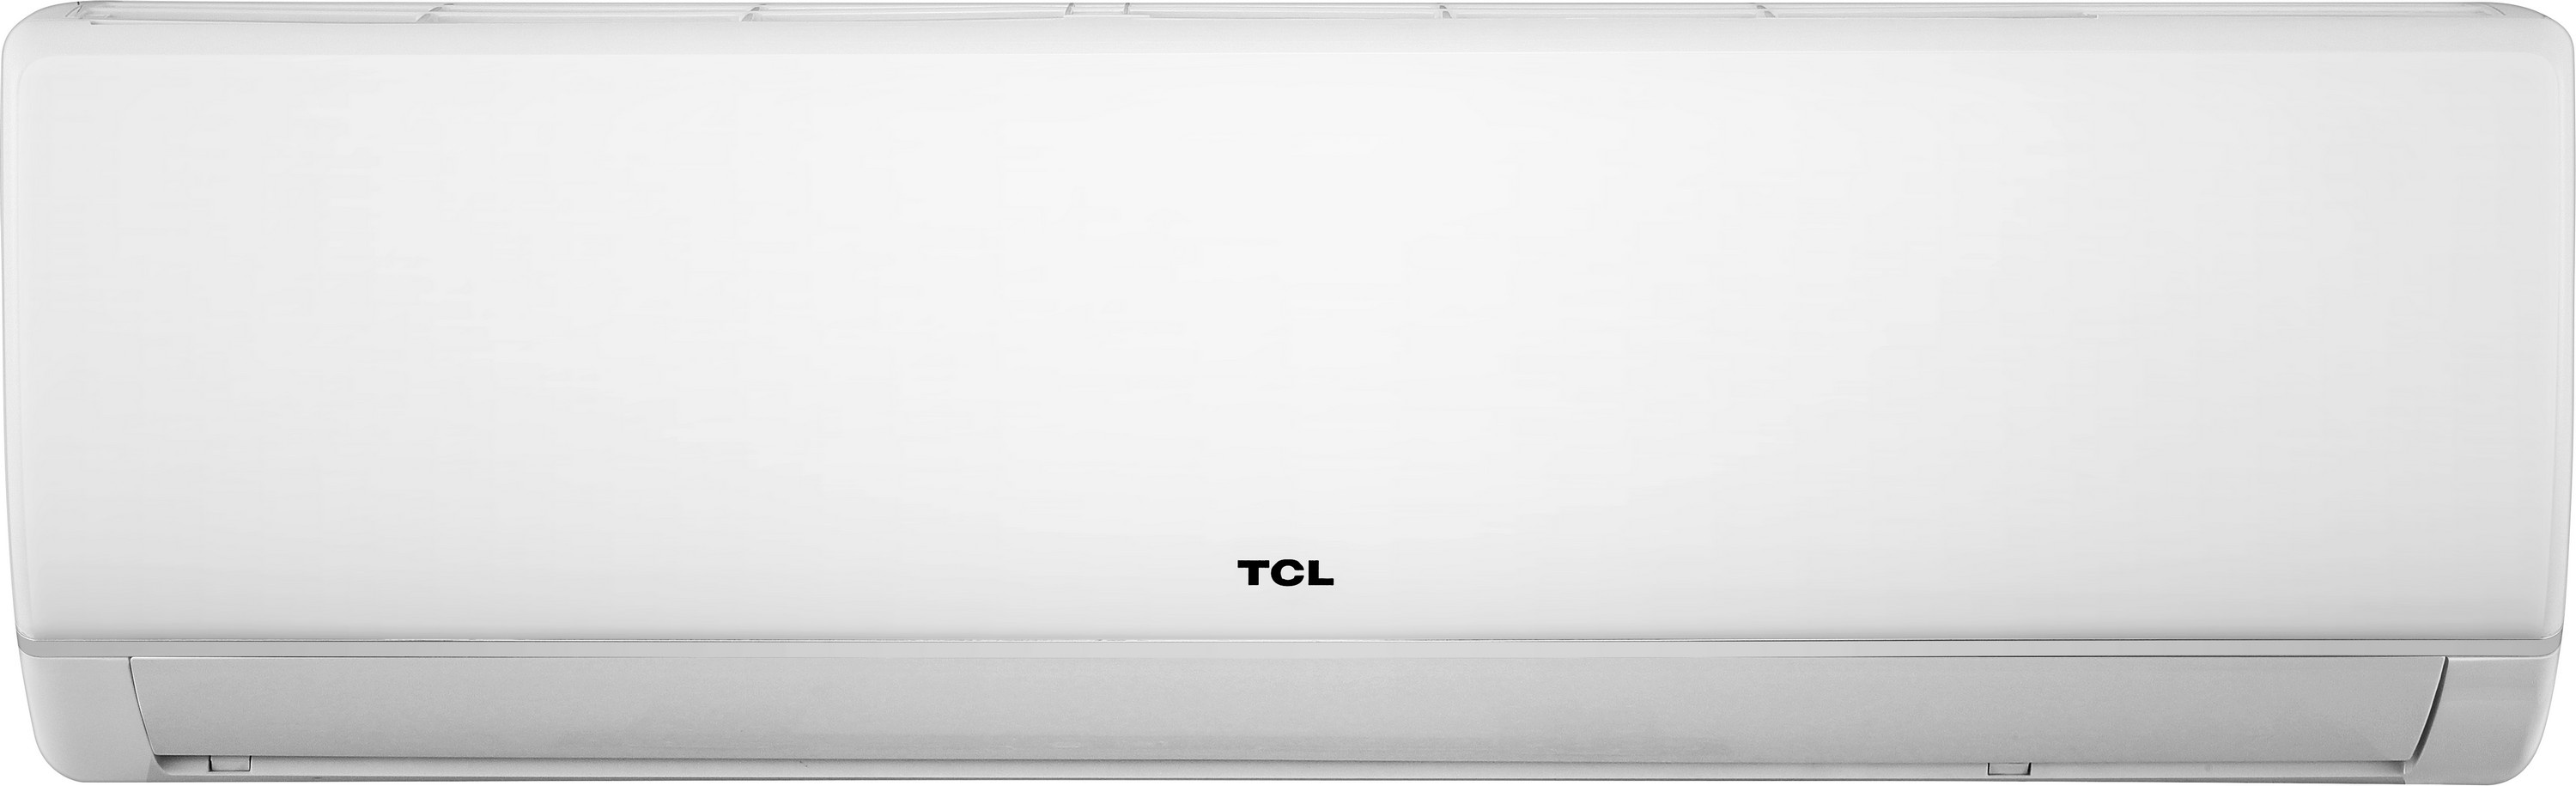 Кондиционер сплит-система TCL Miracle TAC-18CHSA/VB цена 0.00 грн - фотография 2